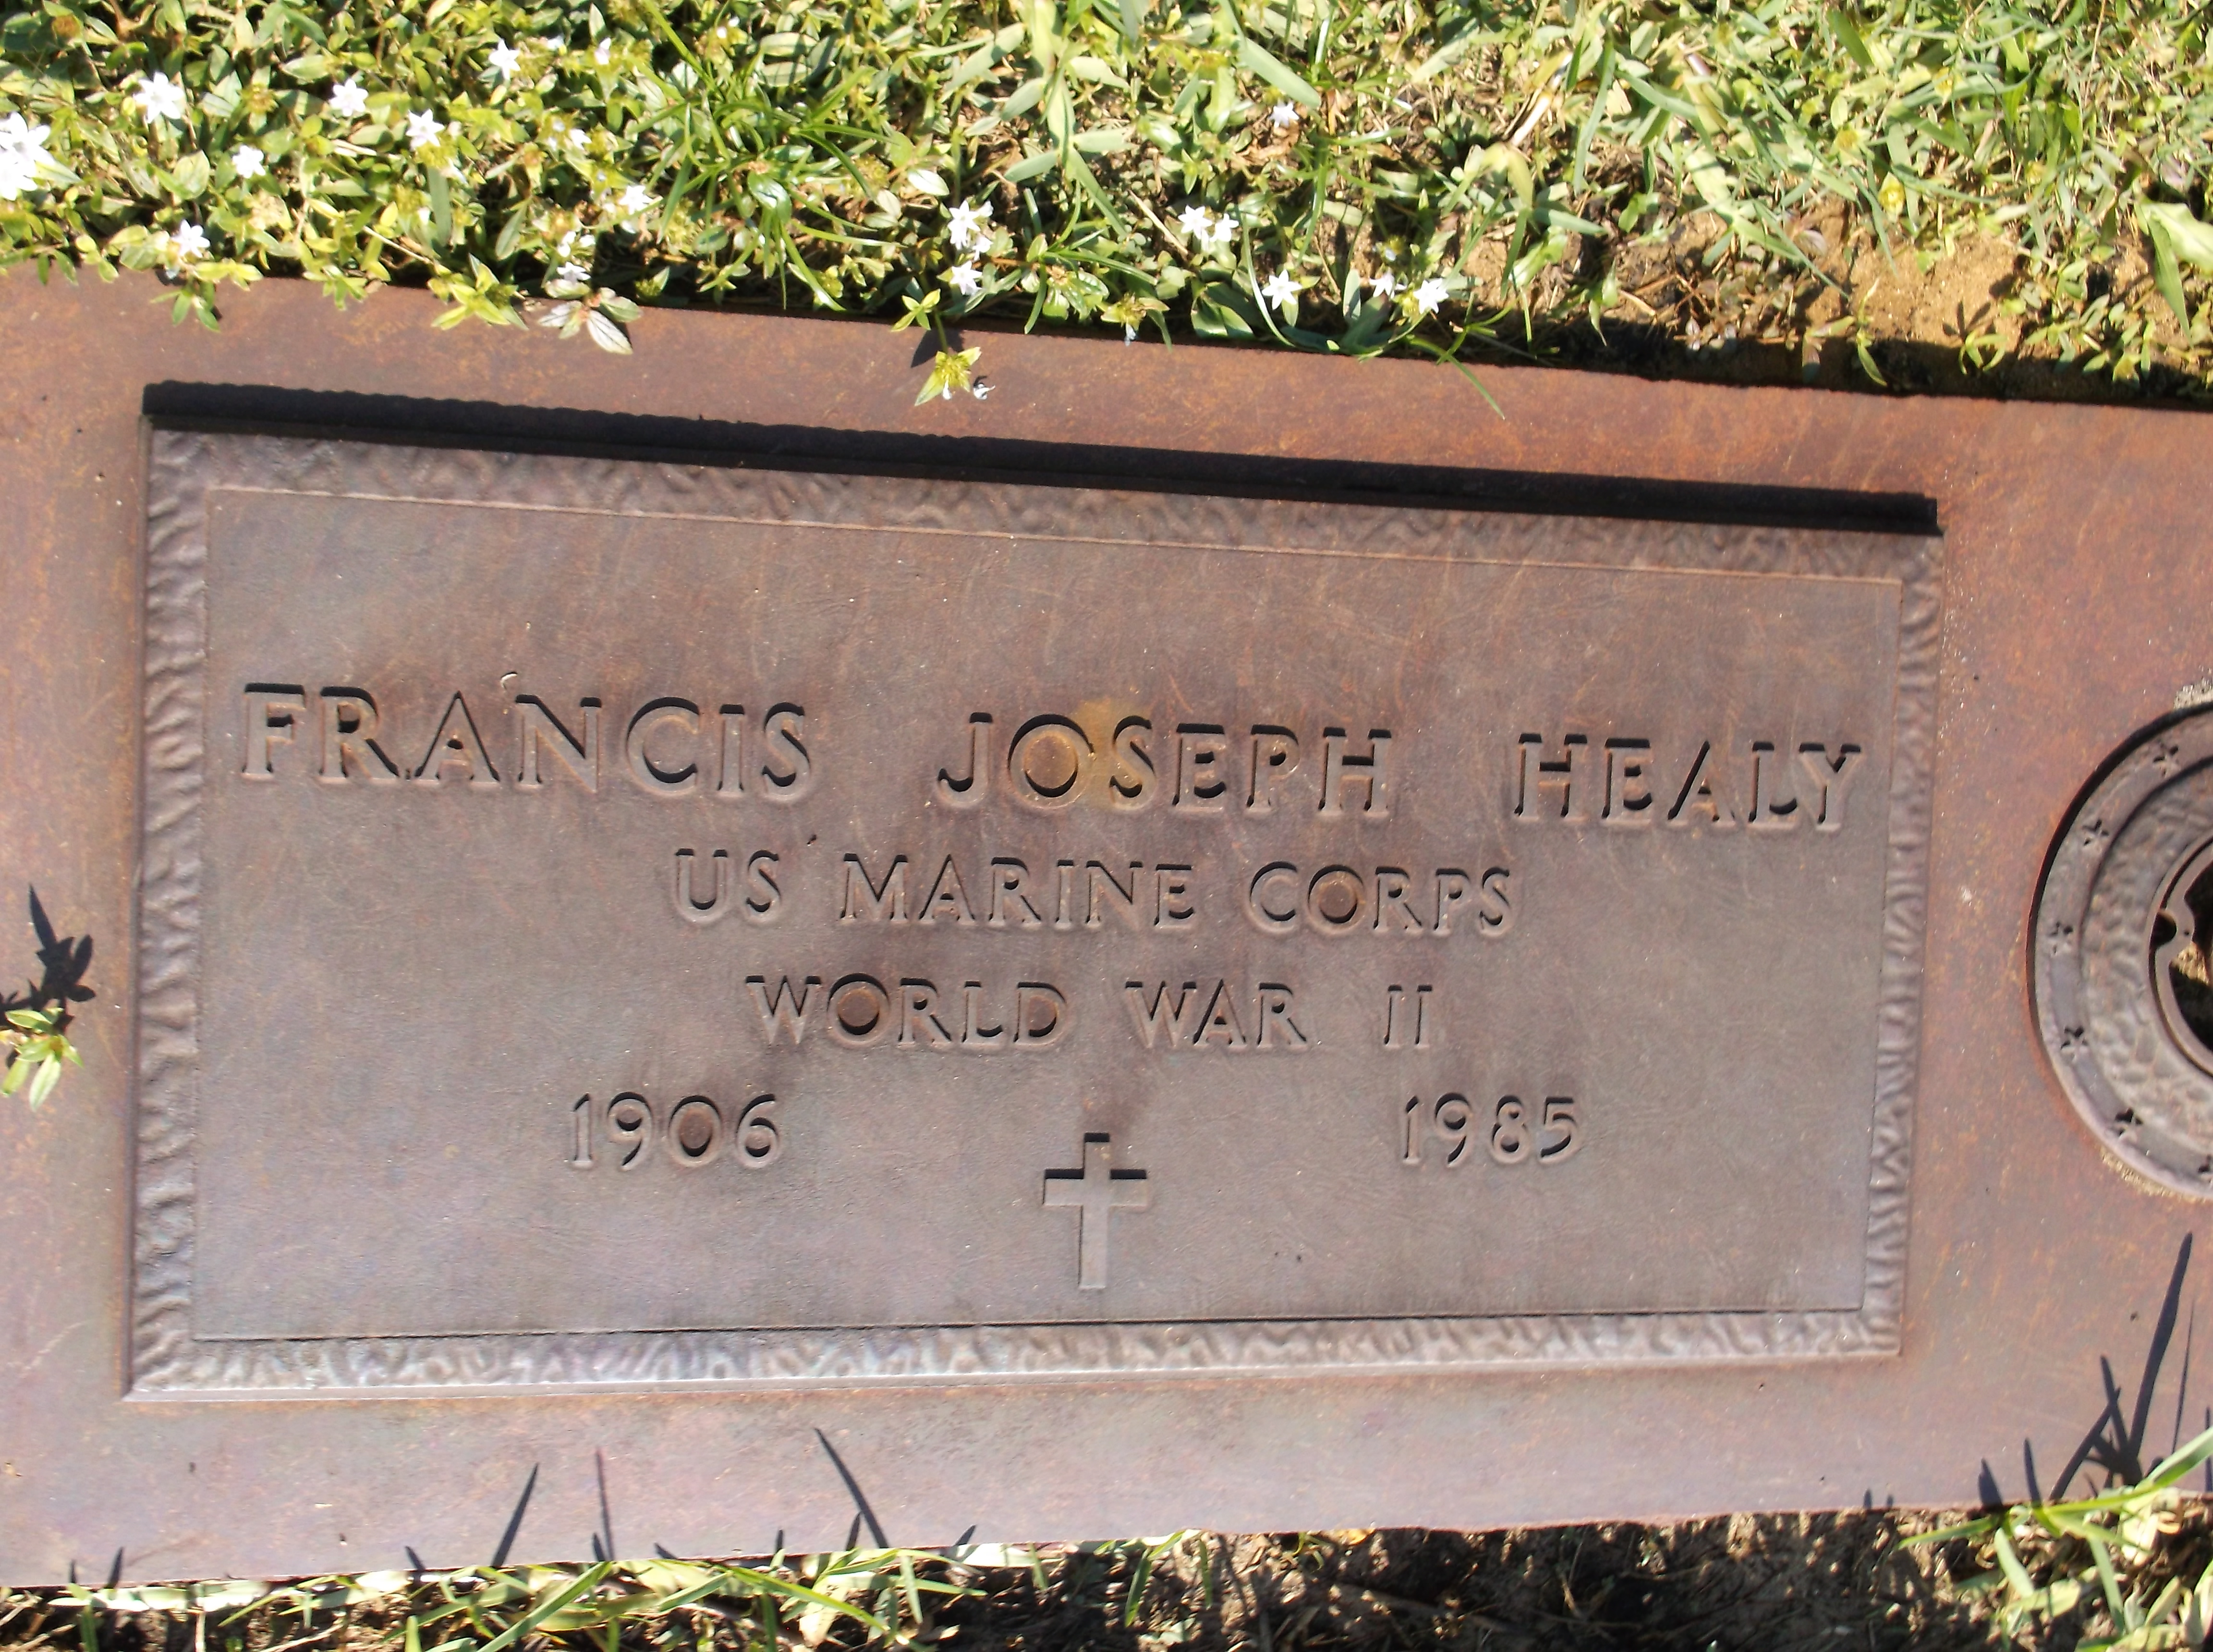 Francis Joseph Healy